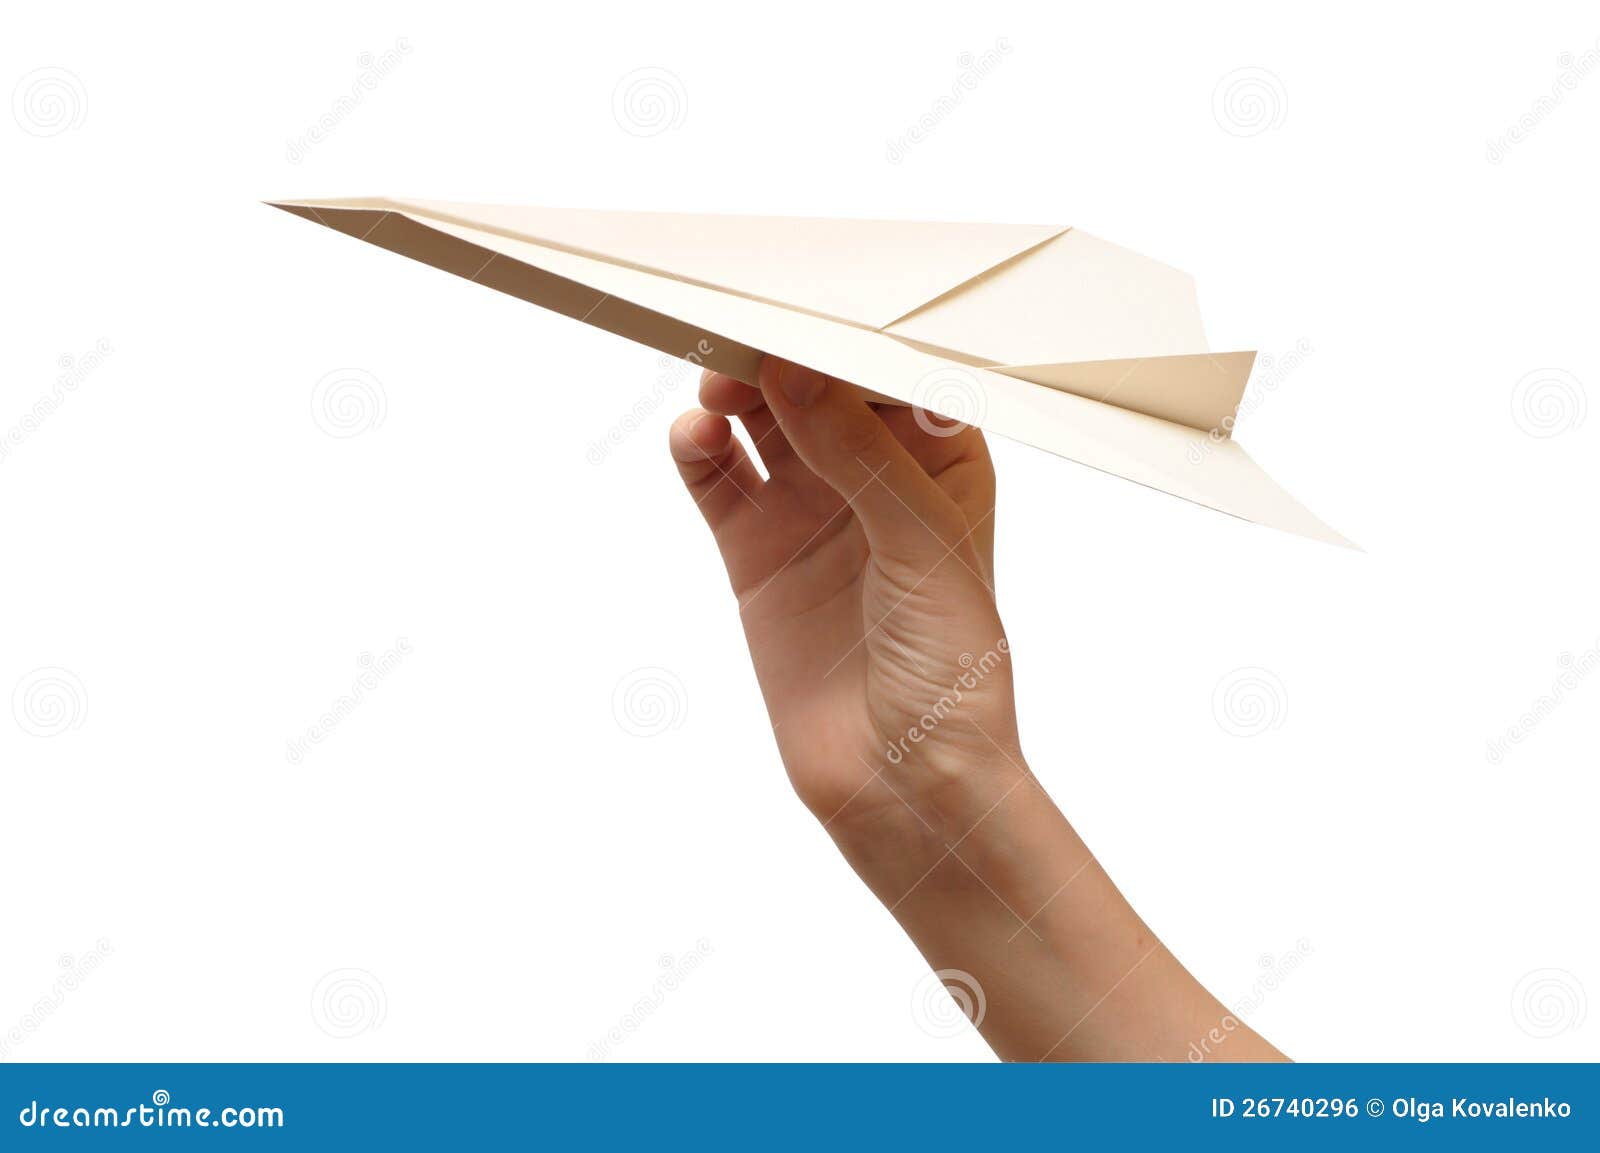 Над бумажным над листом. Бумажный самолетик Мем. Бумажные самолеты вылетают из коробки. Мужчина бумажный самолетик Фотобанк белый фон. Мужчина пускает бумажный самолетик Фотобанк белый фон.